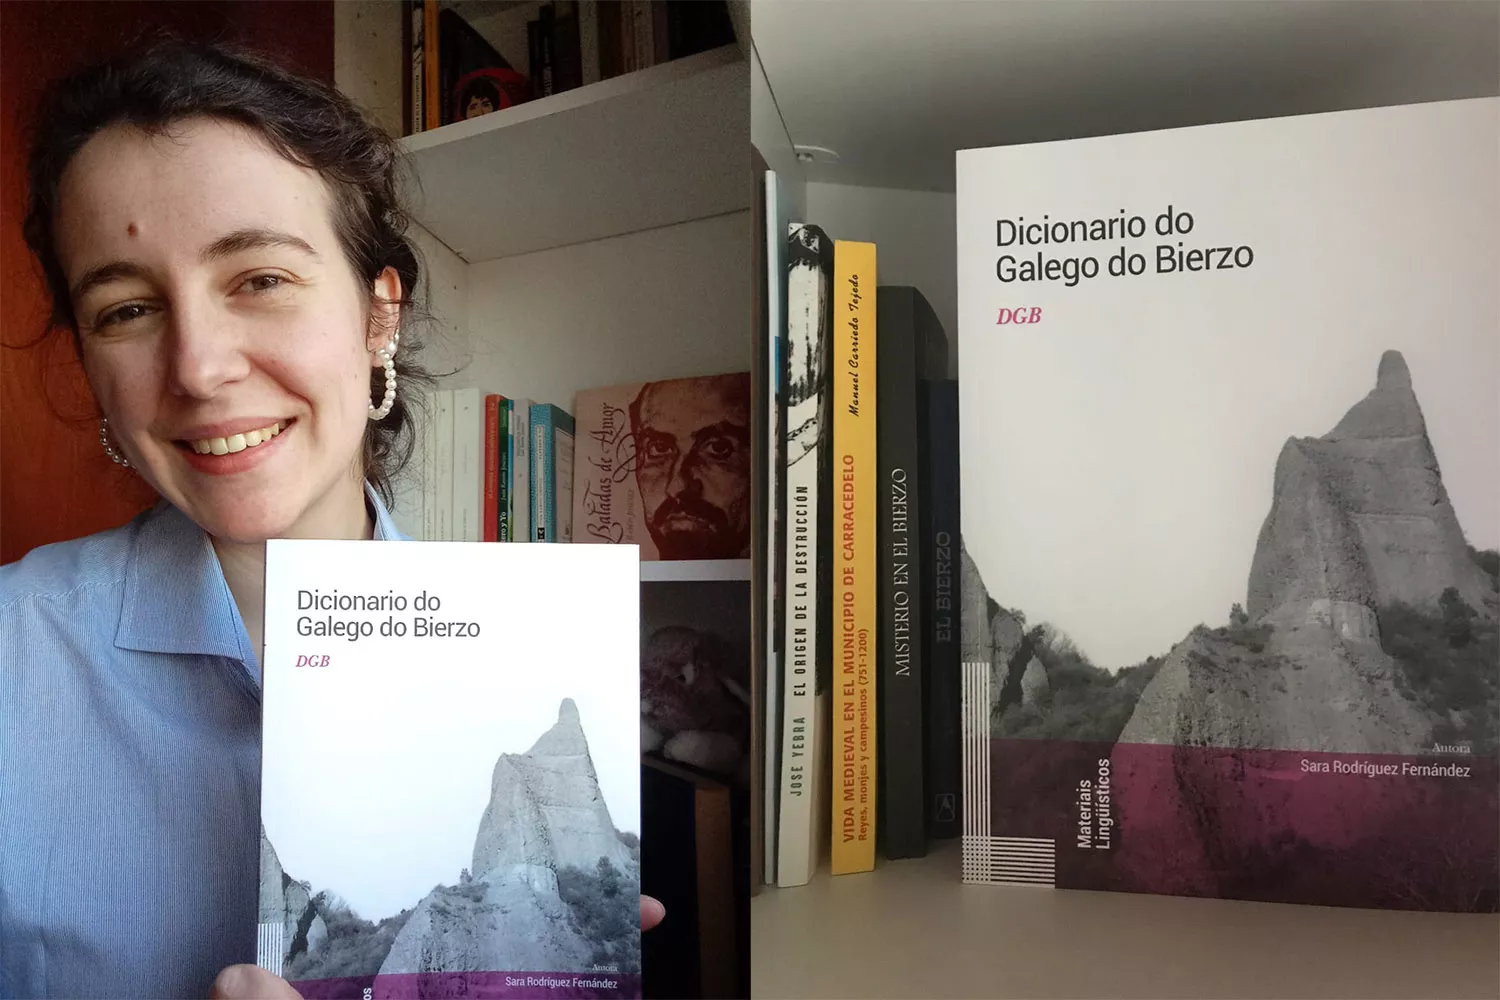 'O Dicionario do Galego do Bierzo' de Sara Rodríguez